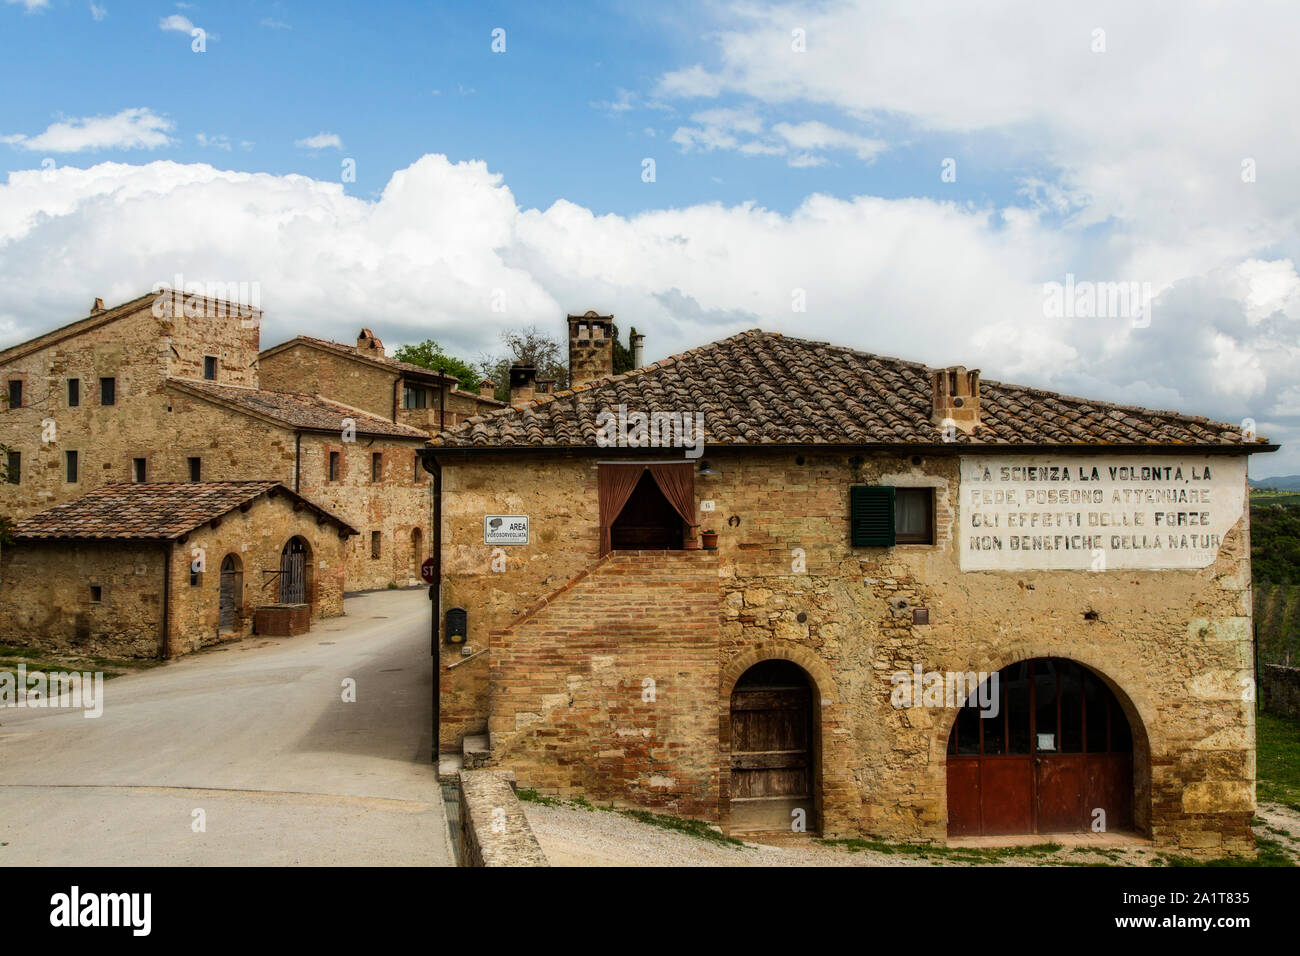 Sienne, Toscane/Italie - le 28 avril 2019 : Scène de village toscan avec un s'est évanoui à la Seconde Guerre mondiale affiche de propagande Mussolini Banque D'Images